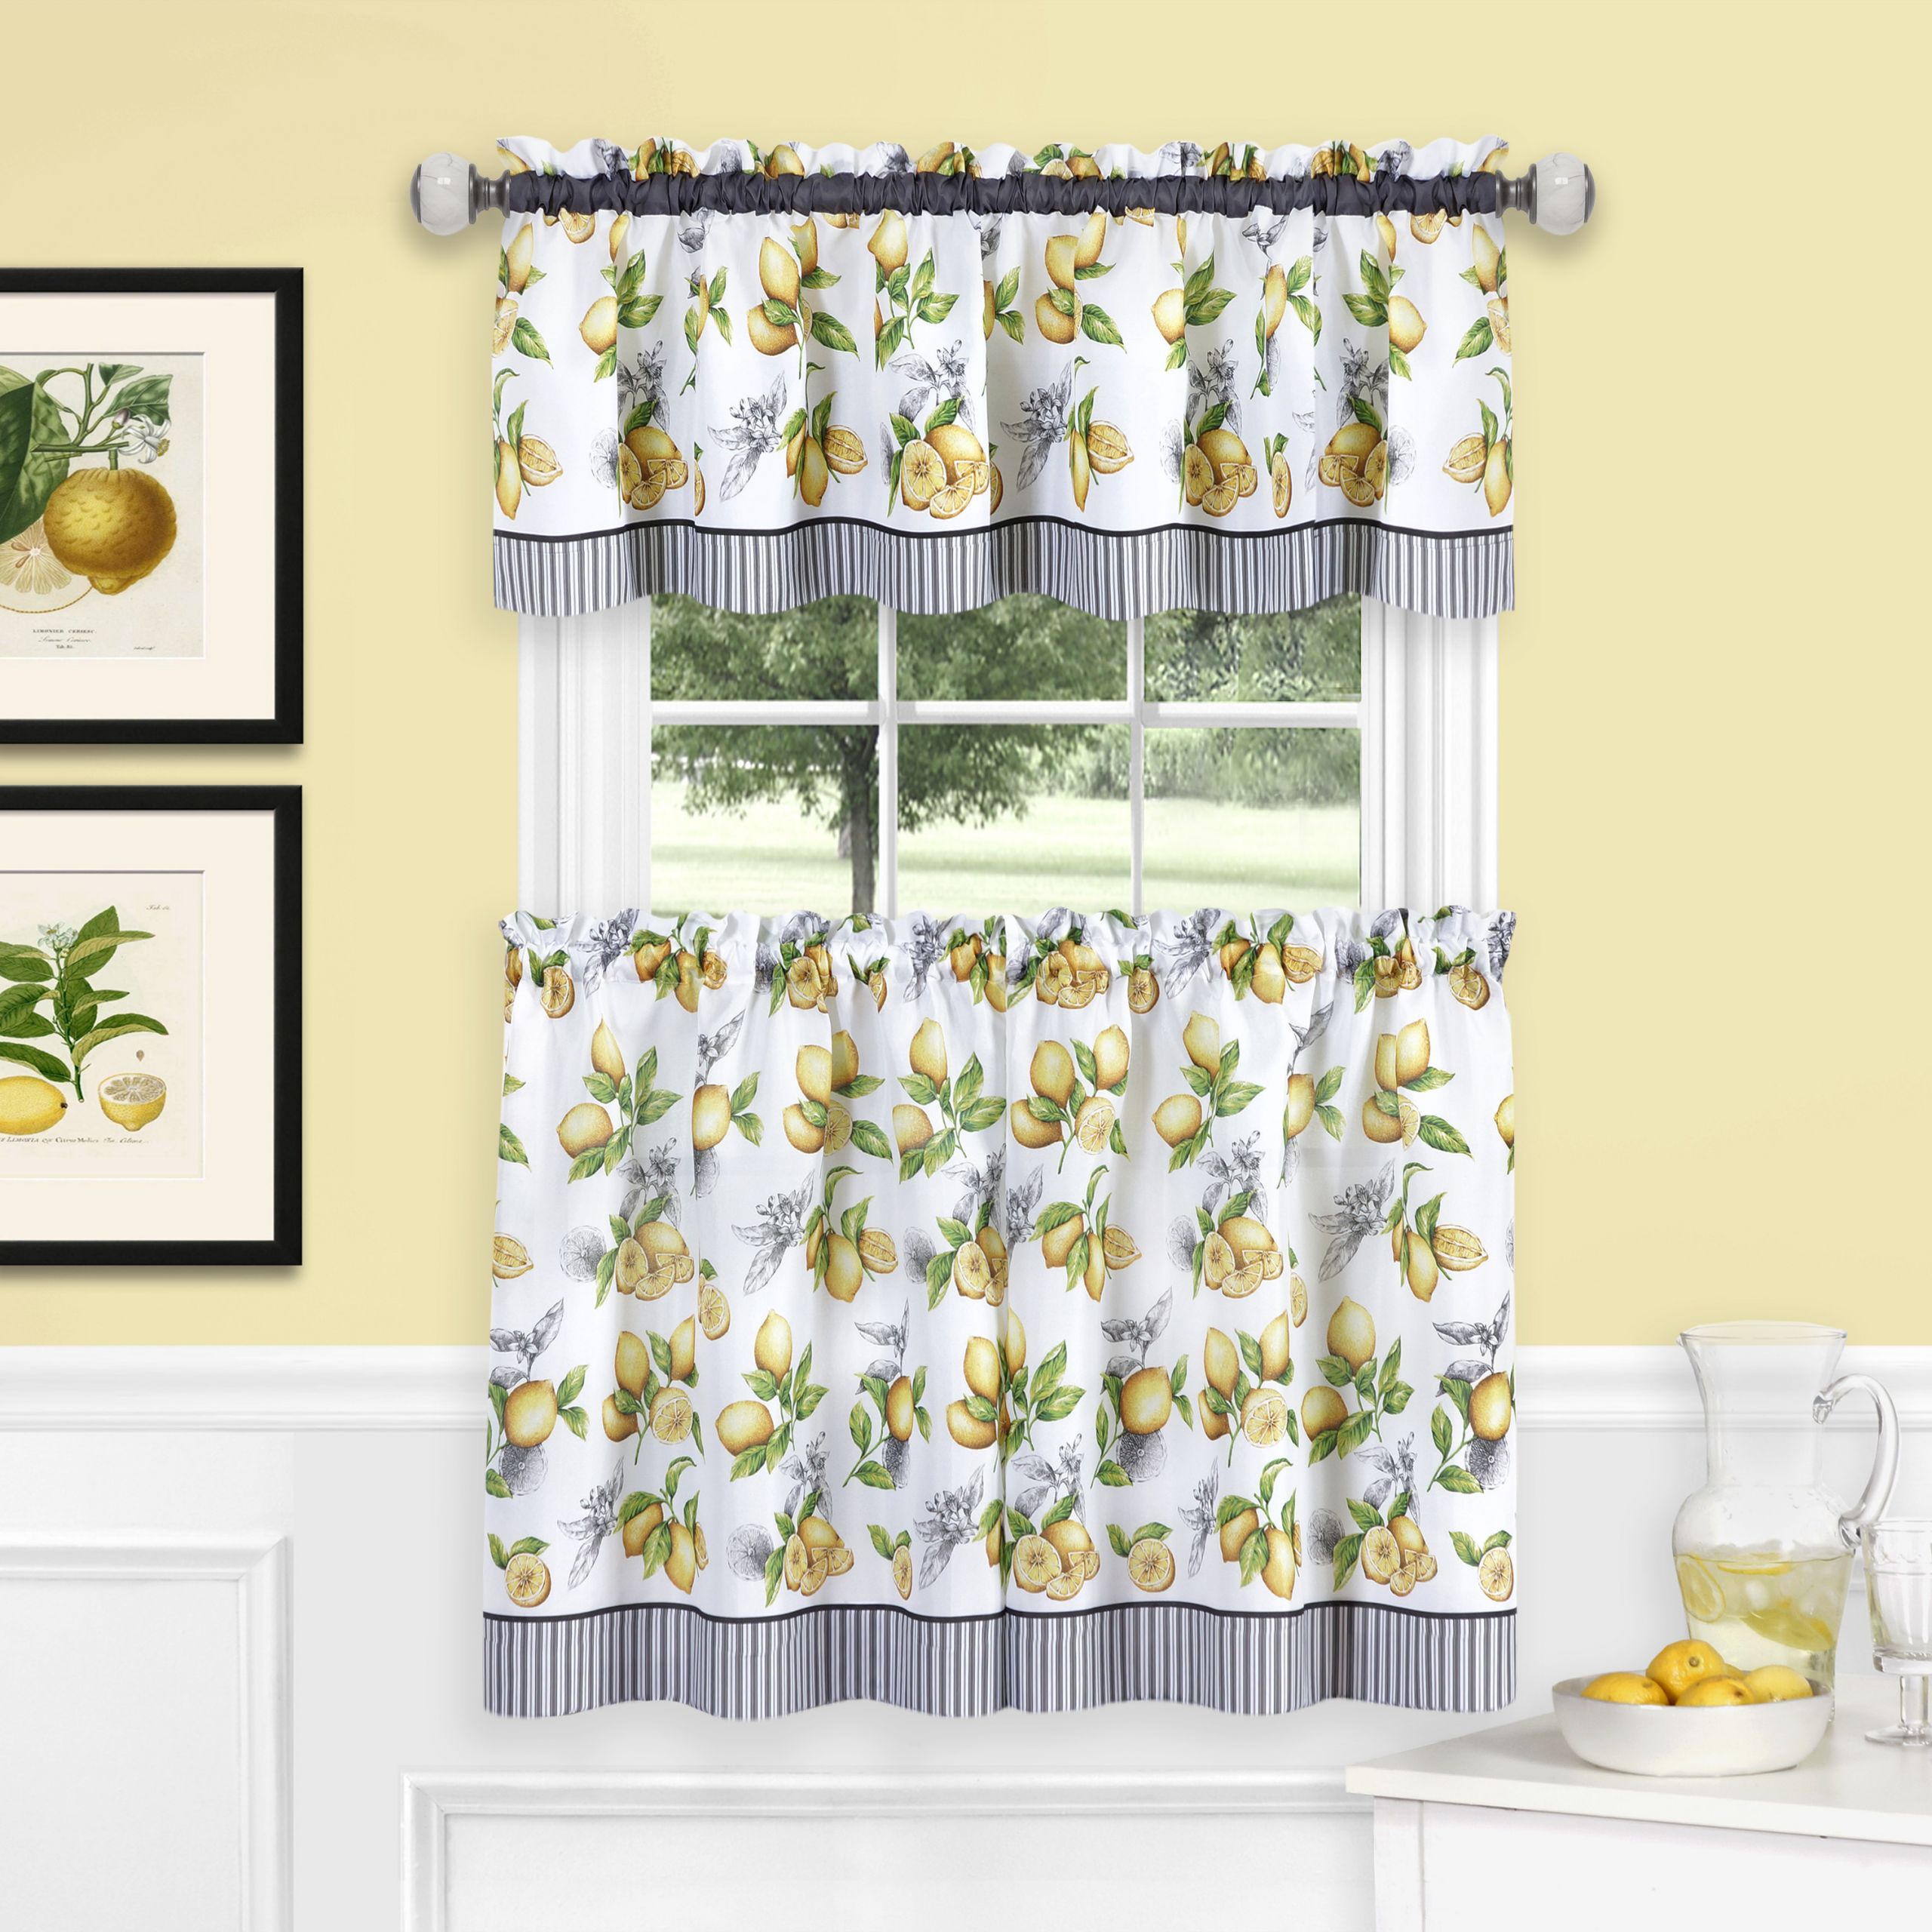 Walmart Curtains Kitchen
 Lemons on Vine plete Café Kitchen Curtain Tier